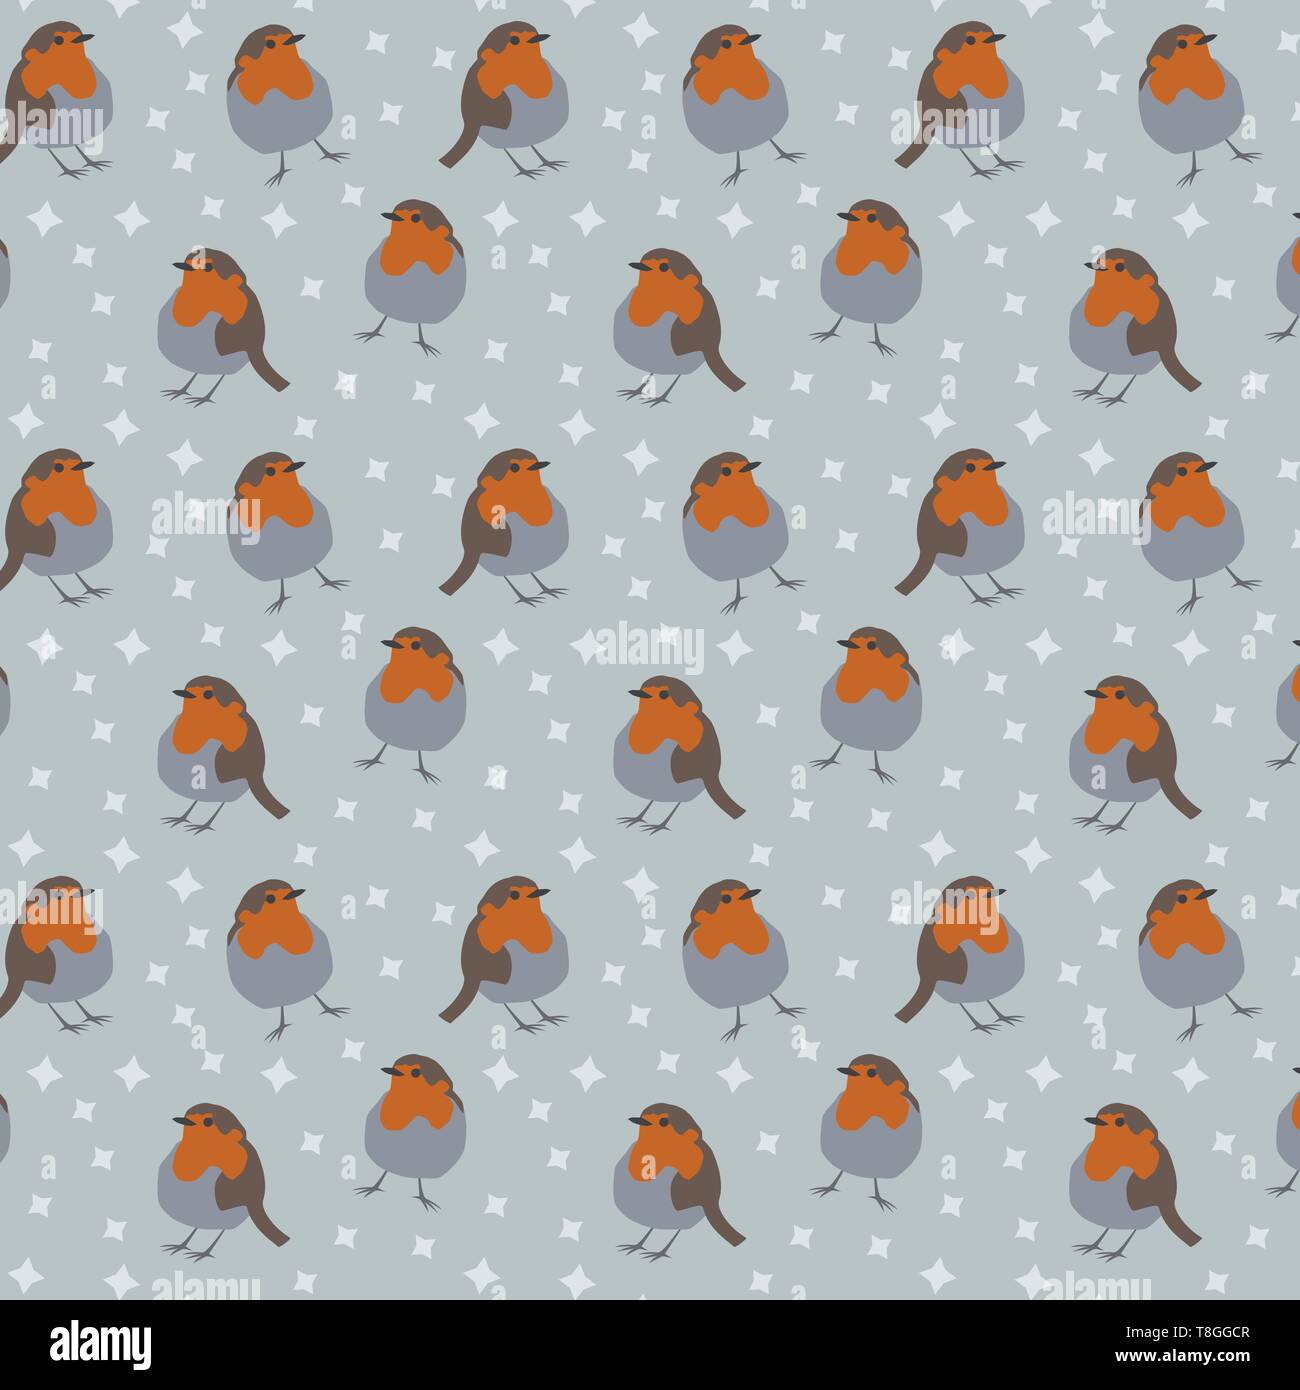 Robin bird vector pattern con sfondo grigio e stelle Illustrazione Vettoriale